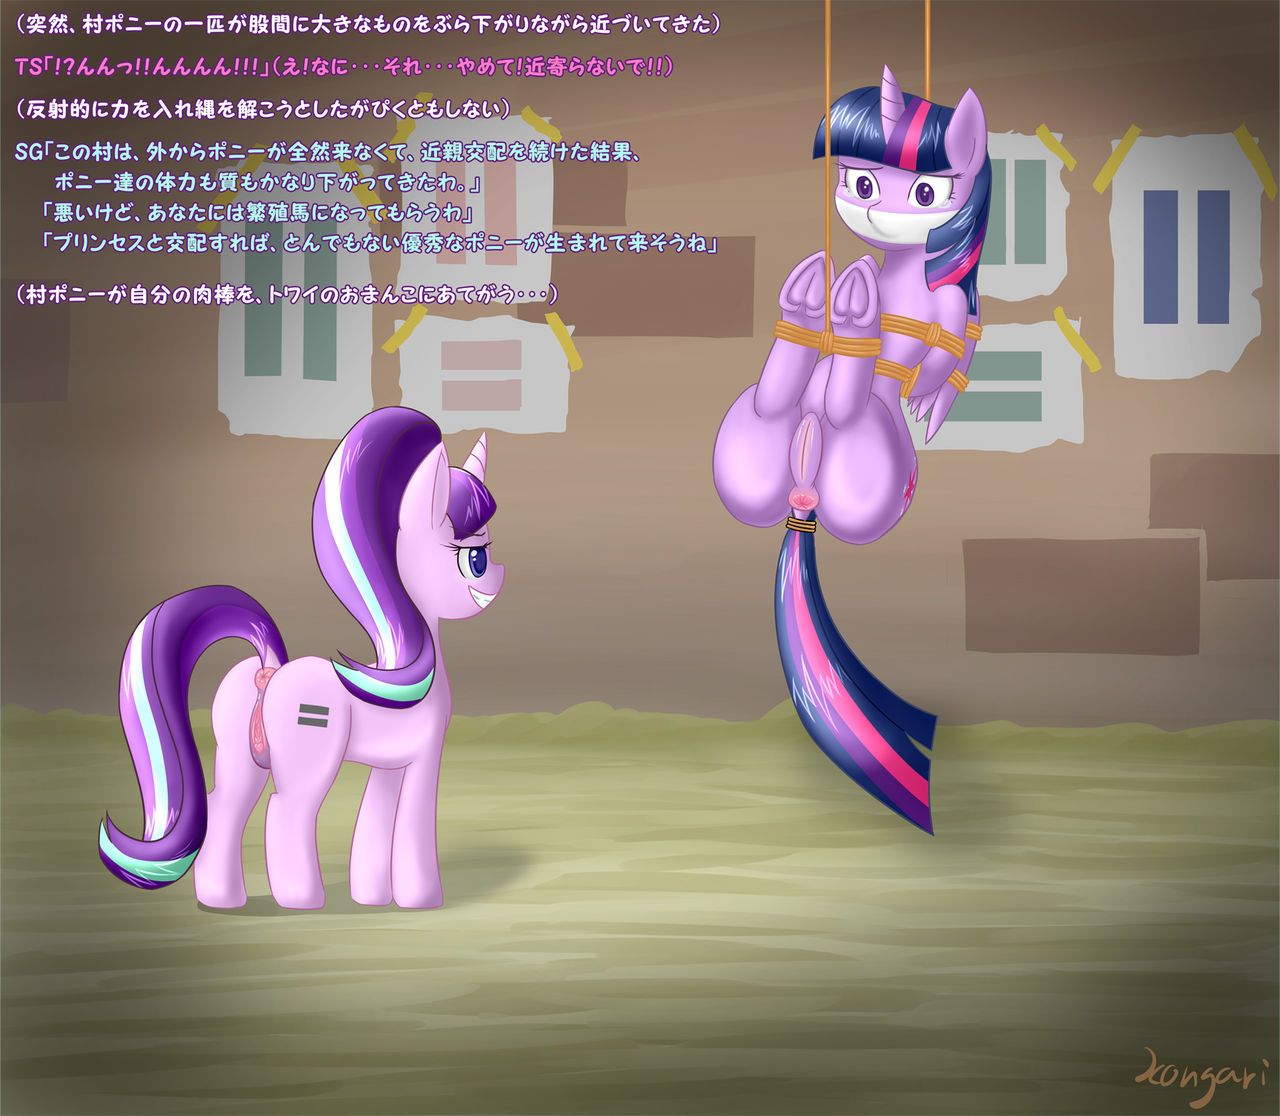 [こんがりトースト] S5E01 BAD END (parts 1-2) (My Little Pony: Friendship is Magic) 3